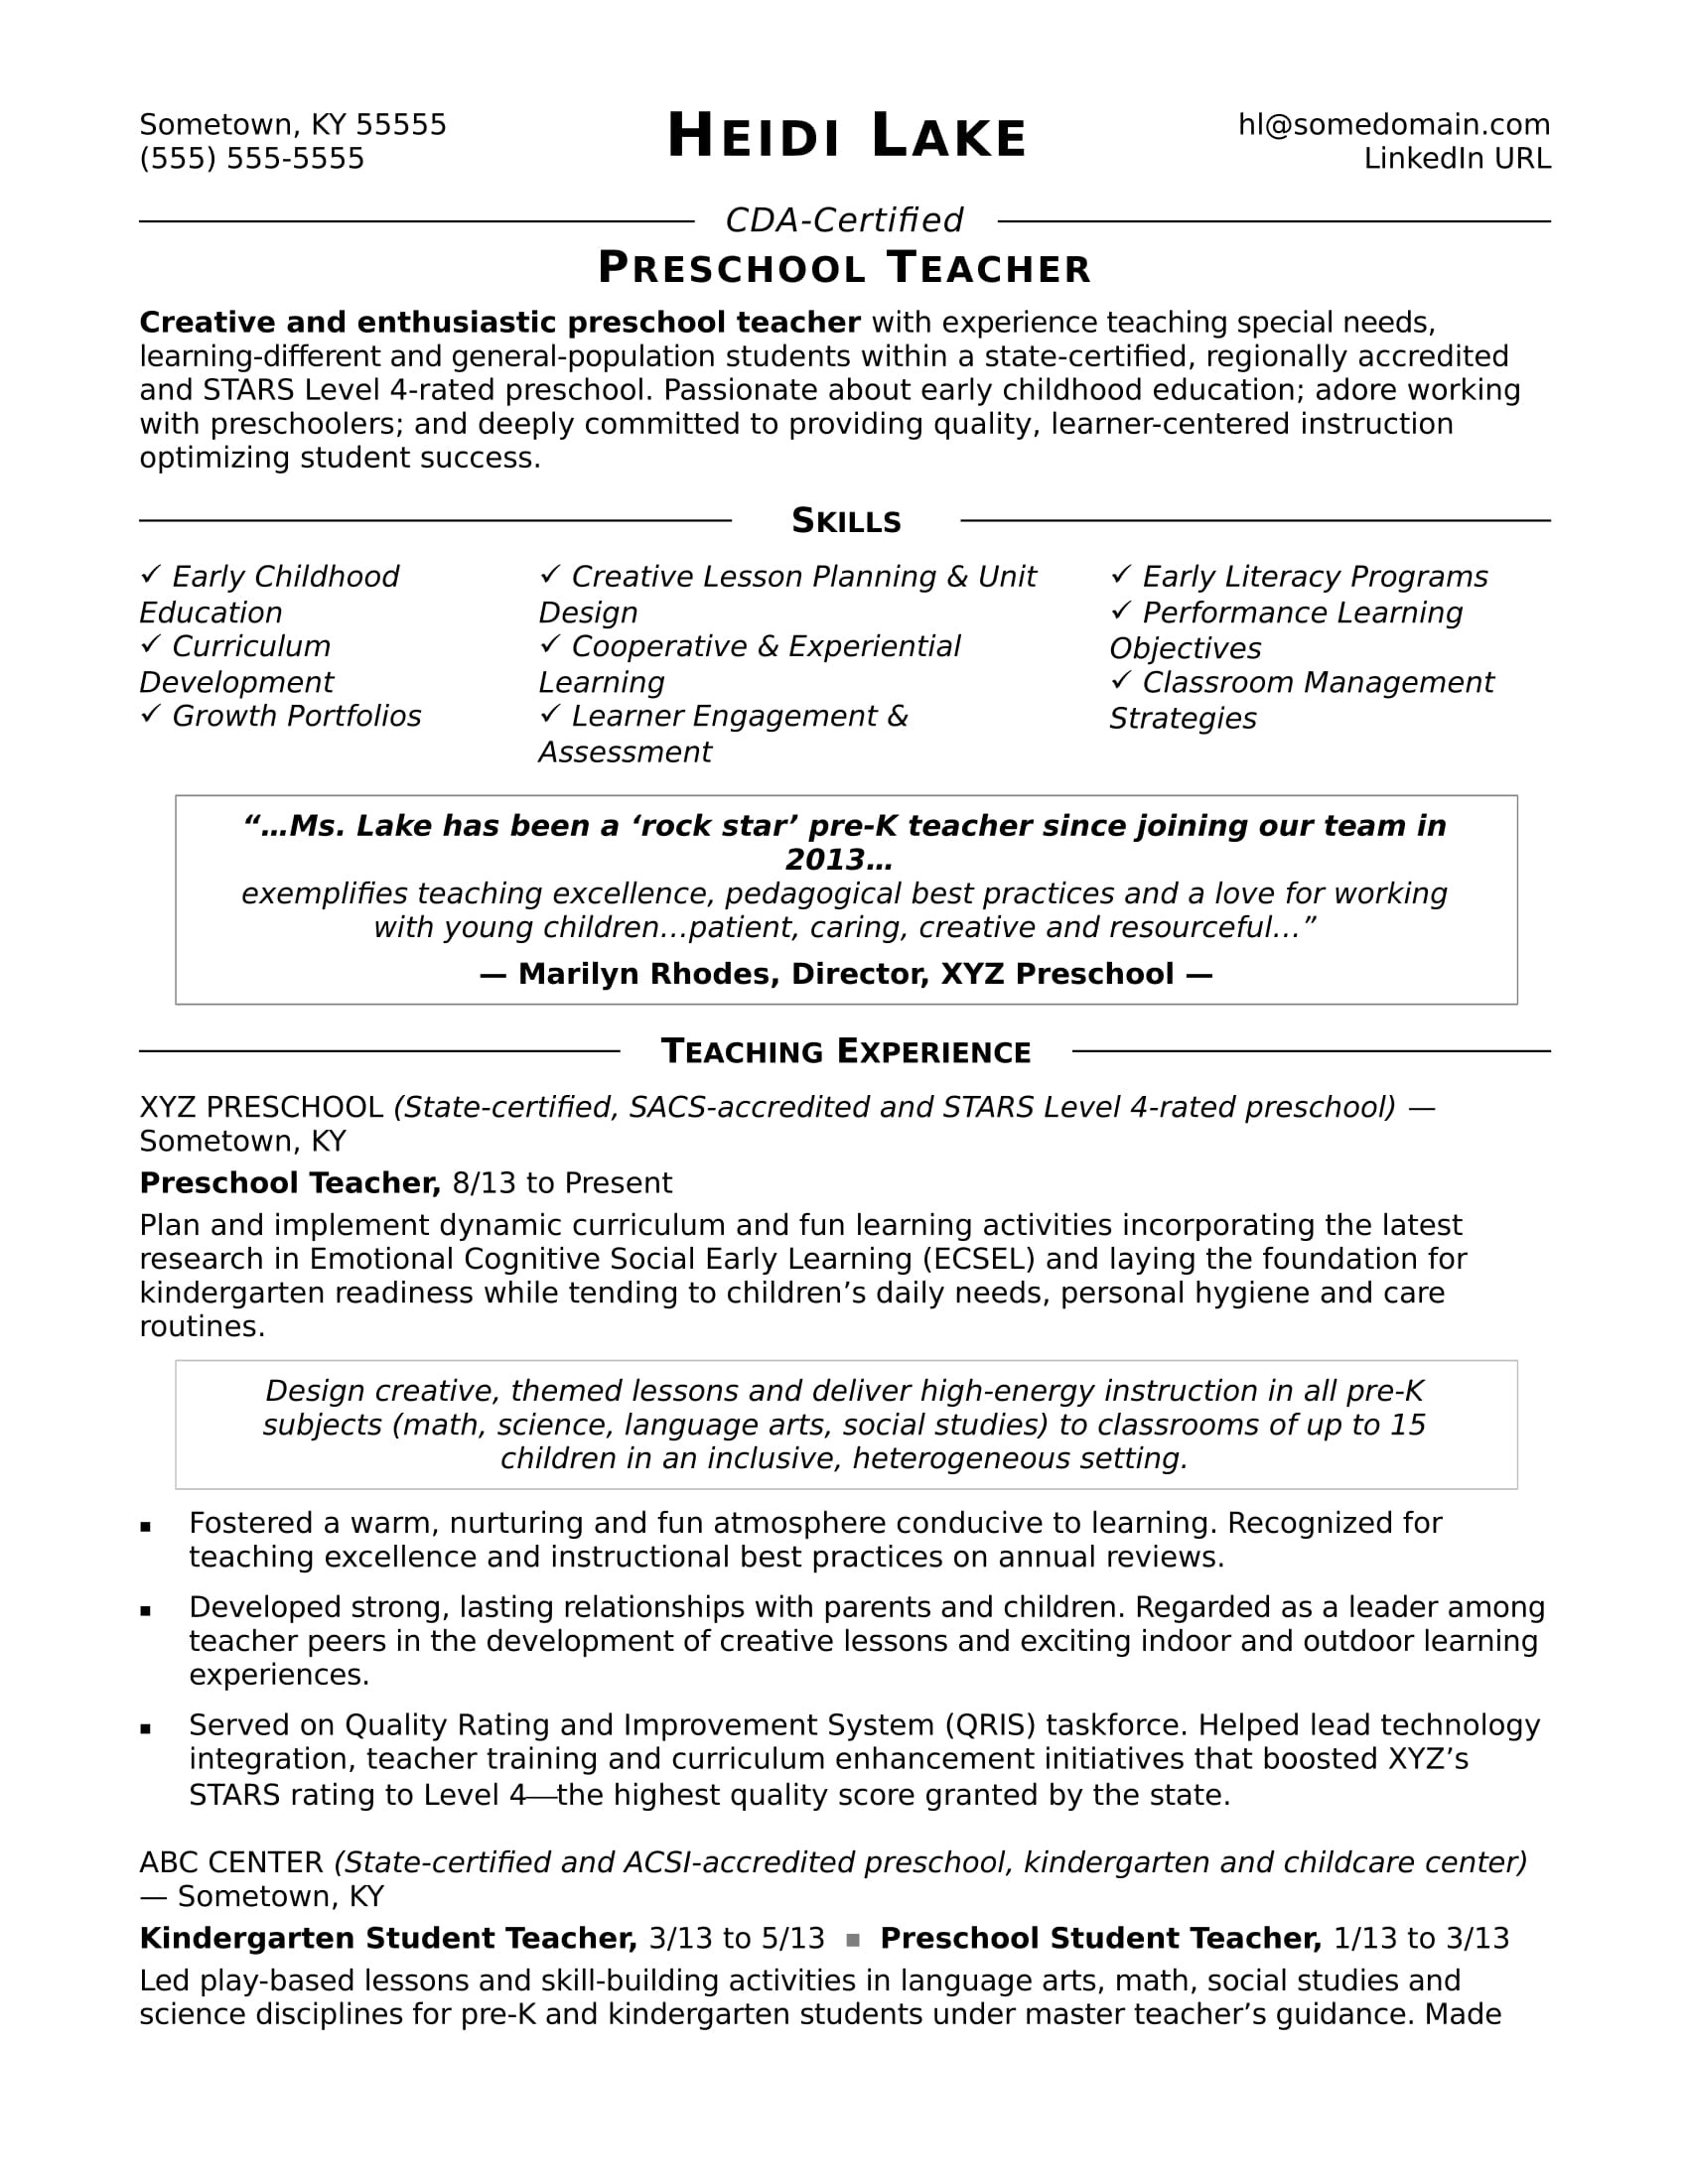 Sample Resume for Kindergarten Teacher Fresher Preschool Teacher Resume Sample Monster.com